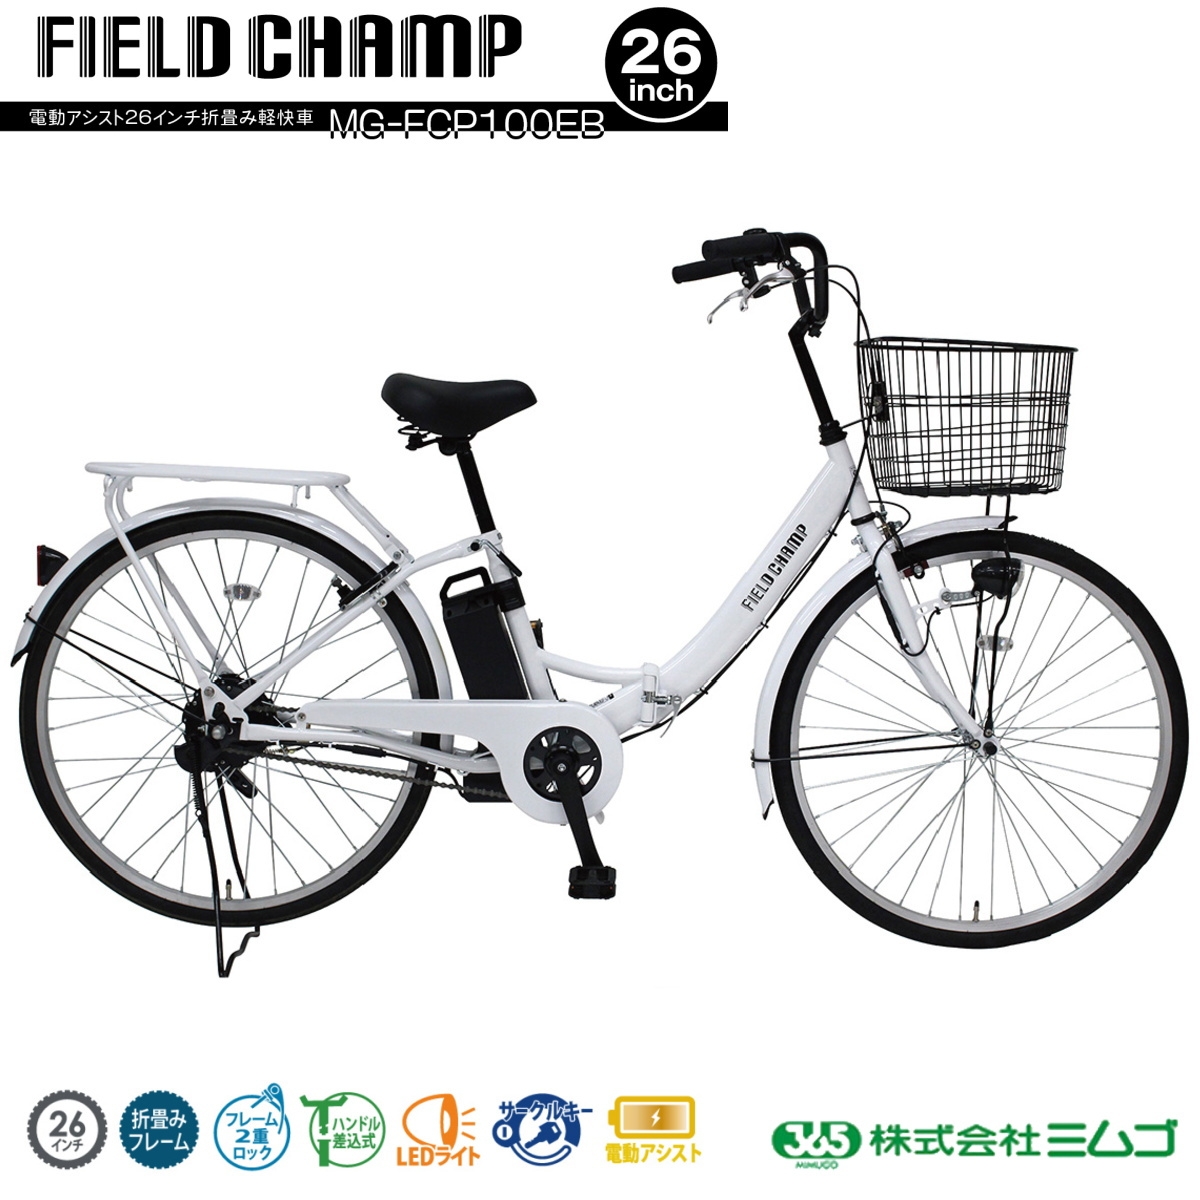 ミムゴ FIELD CHAMP 26インチ 電動アシスト自転車 折畳軽快車 パールホワイト MG-FCP100EB